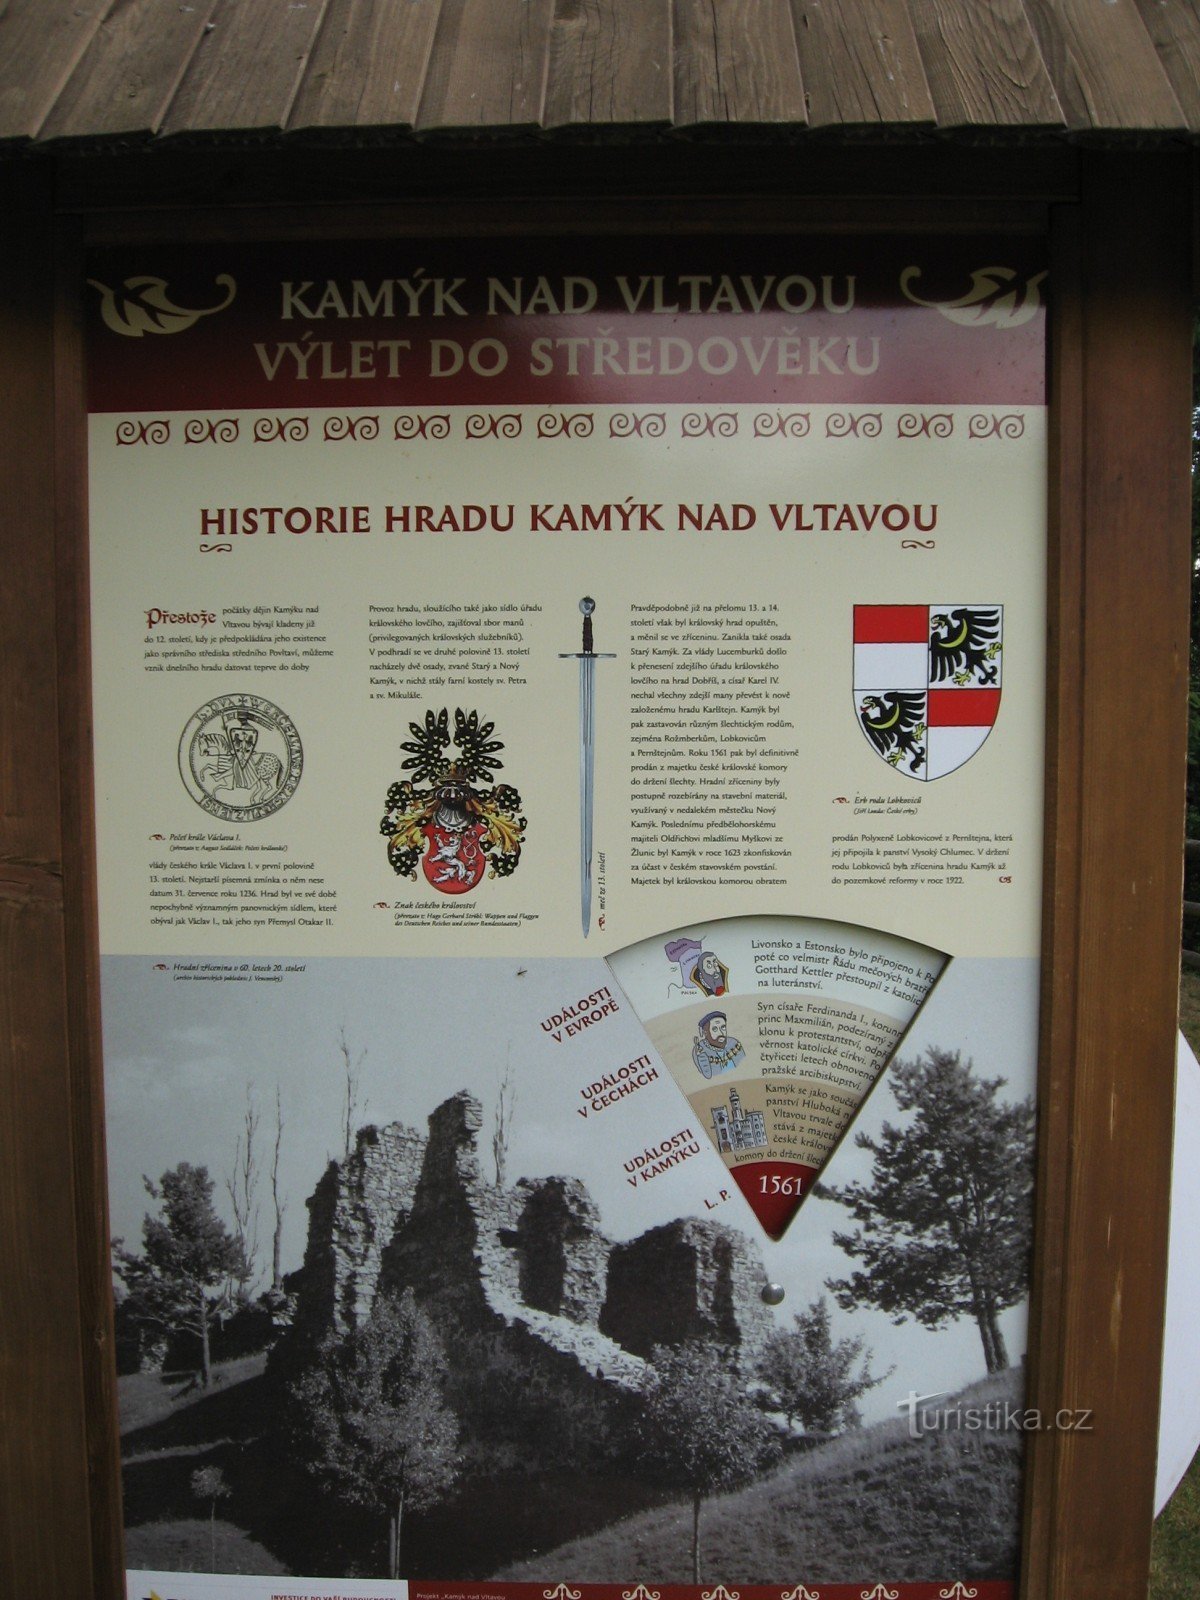 tablica informacyjna na terenie ruin Kamýk nad Vltavou